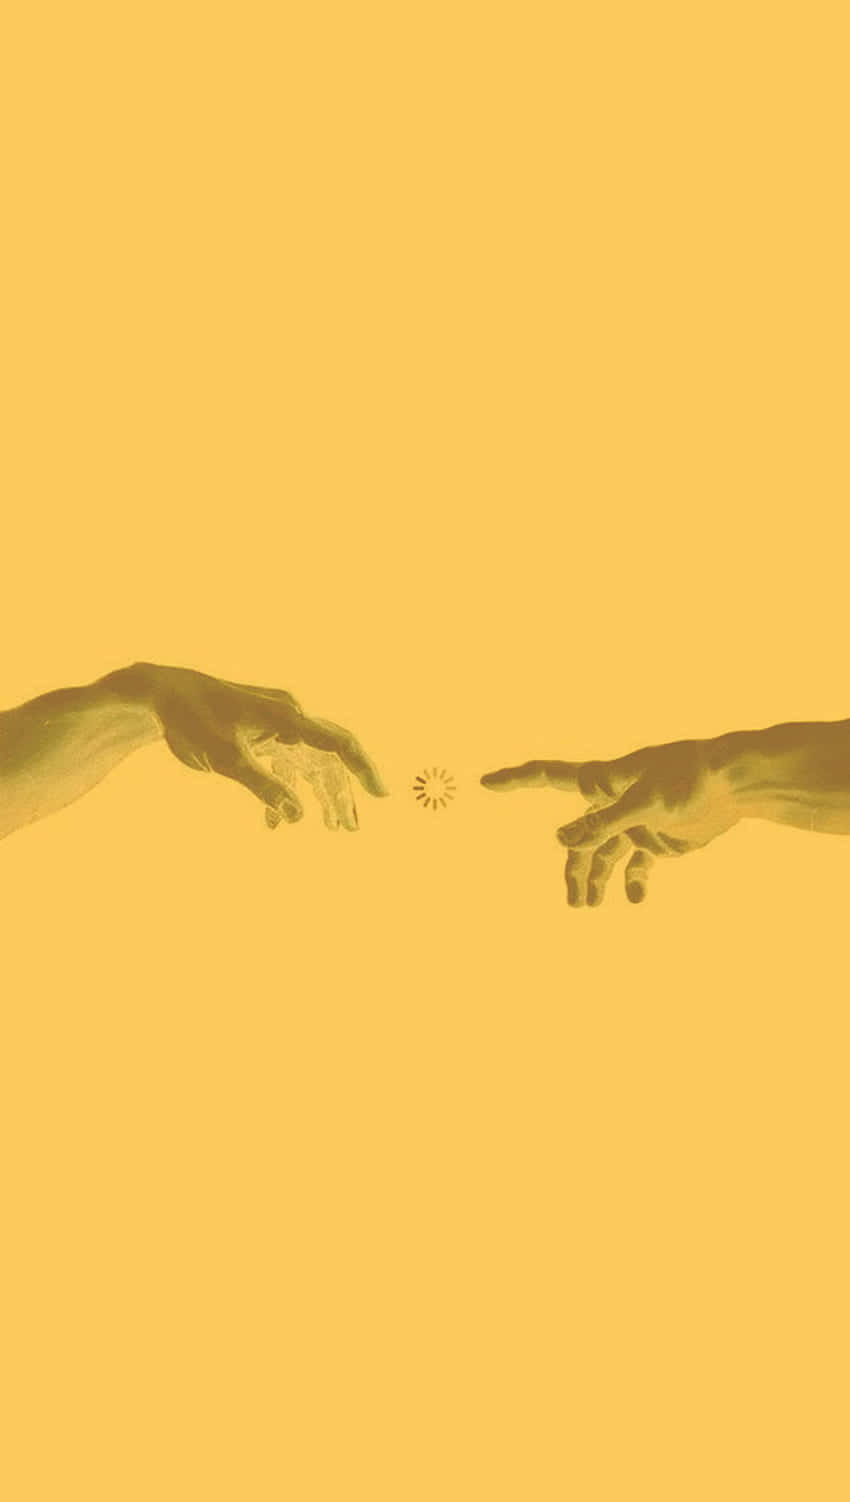 Hænder i gult æstetisk billede